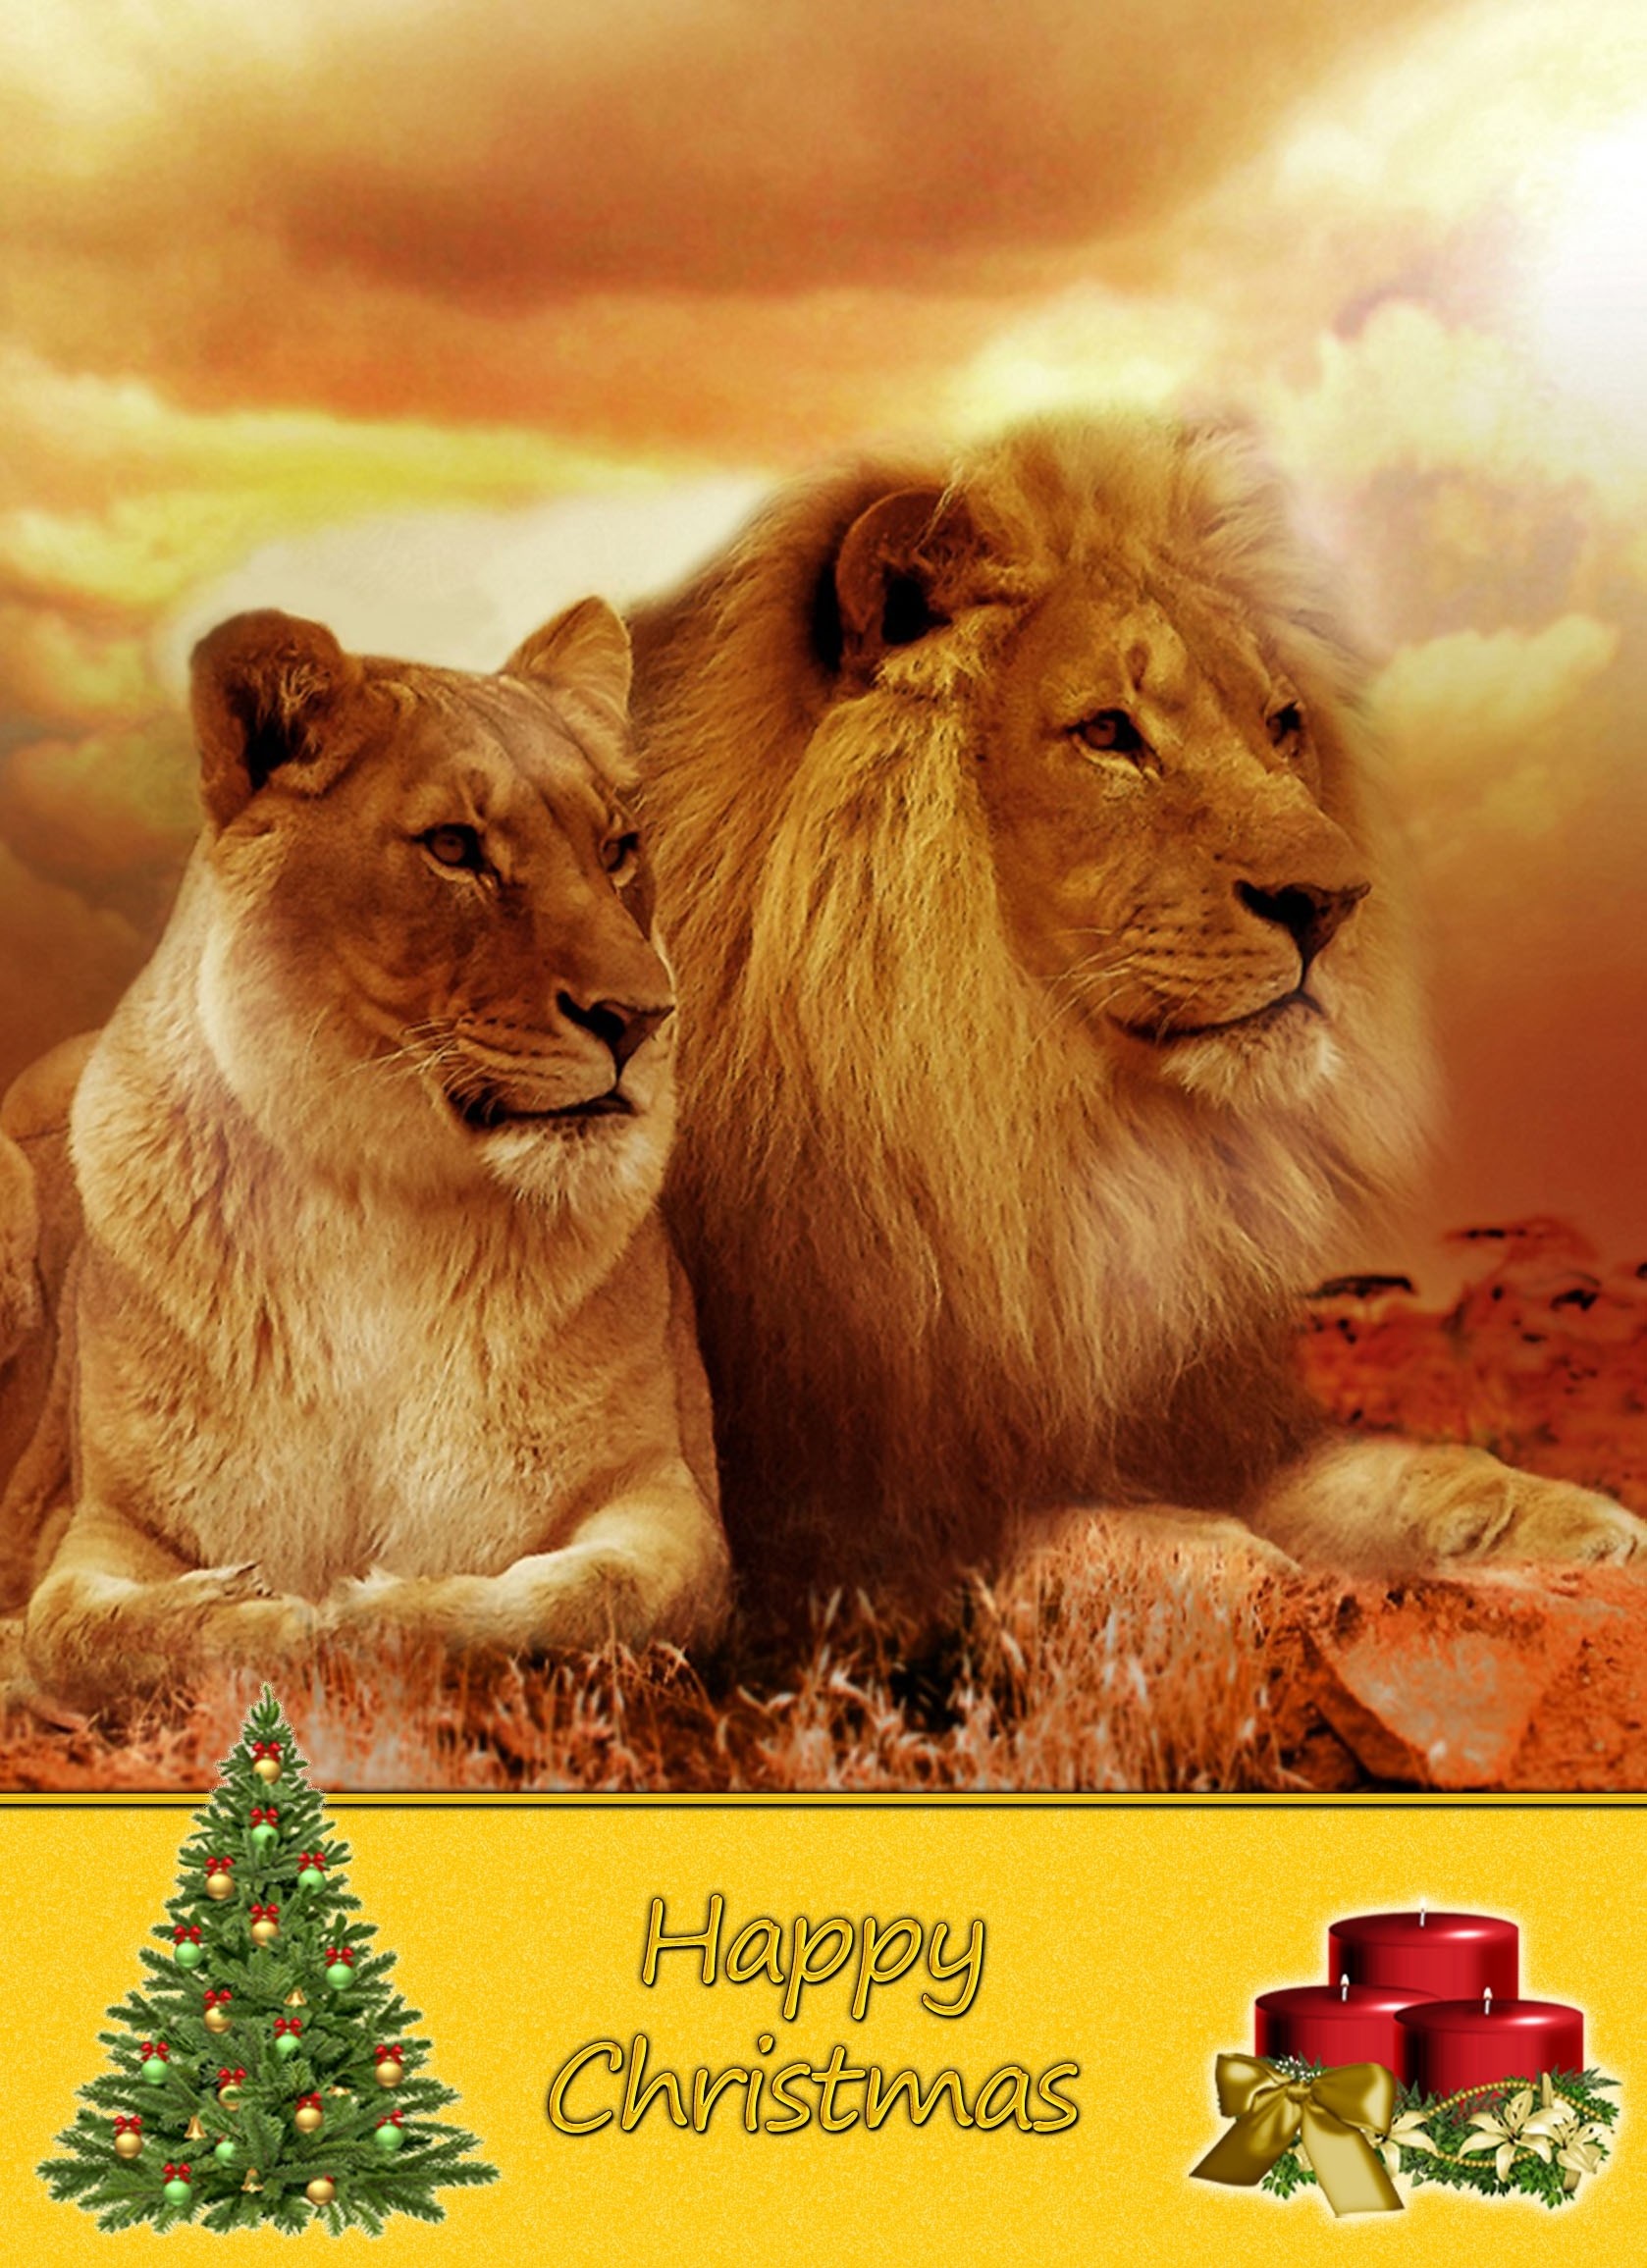 Lion Christmas Card